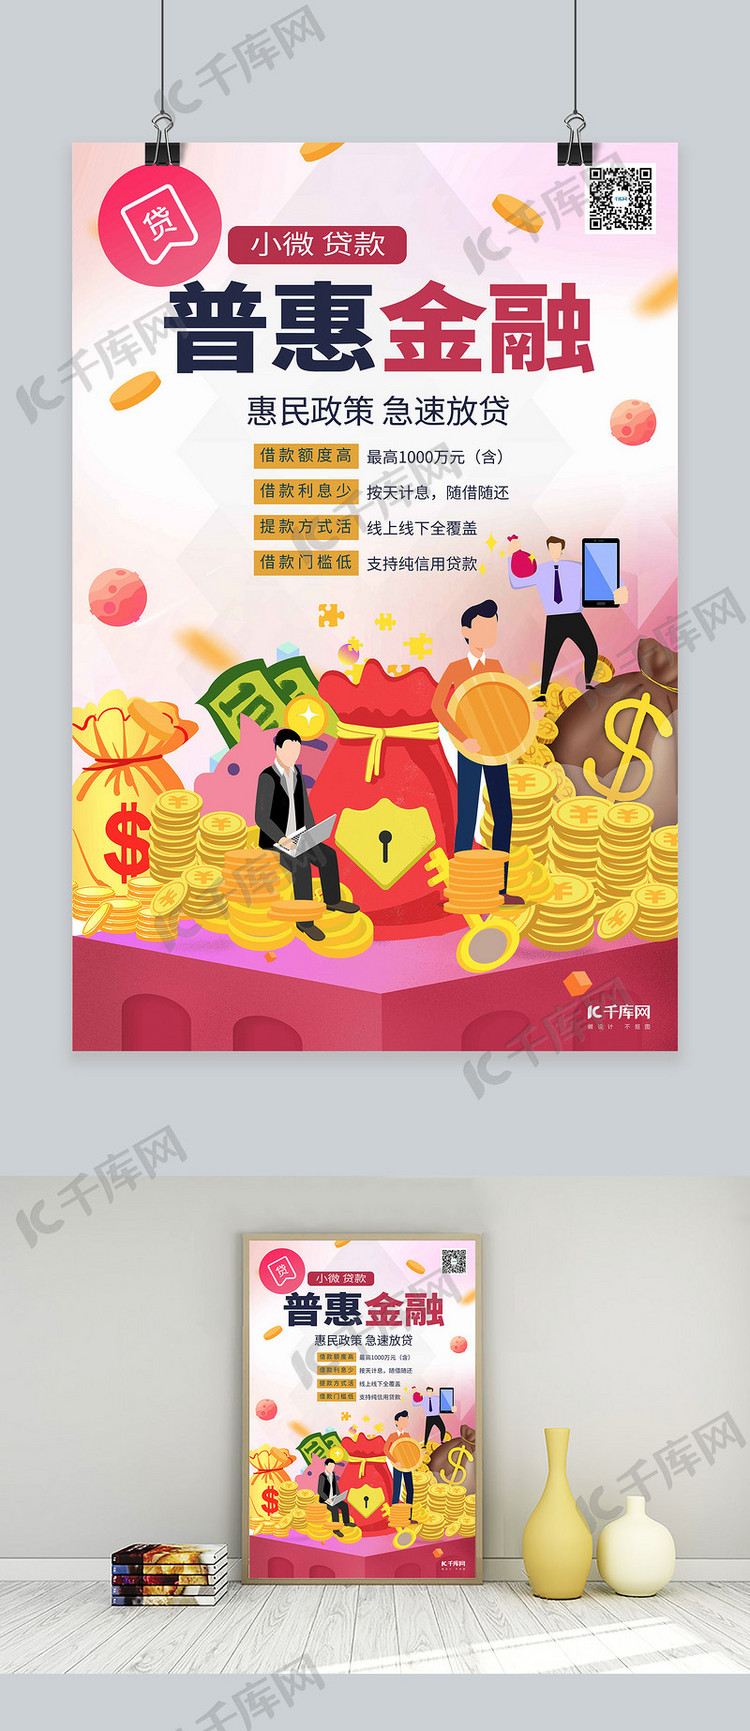 普惠金融投资理财暖色系简约海报